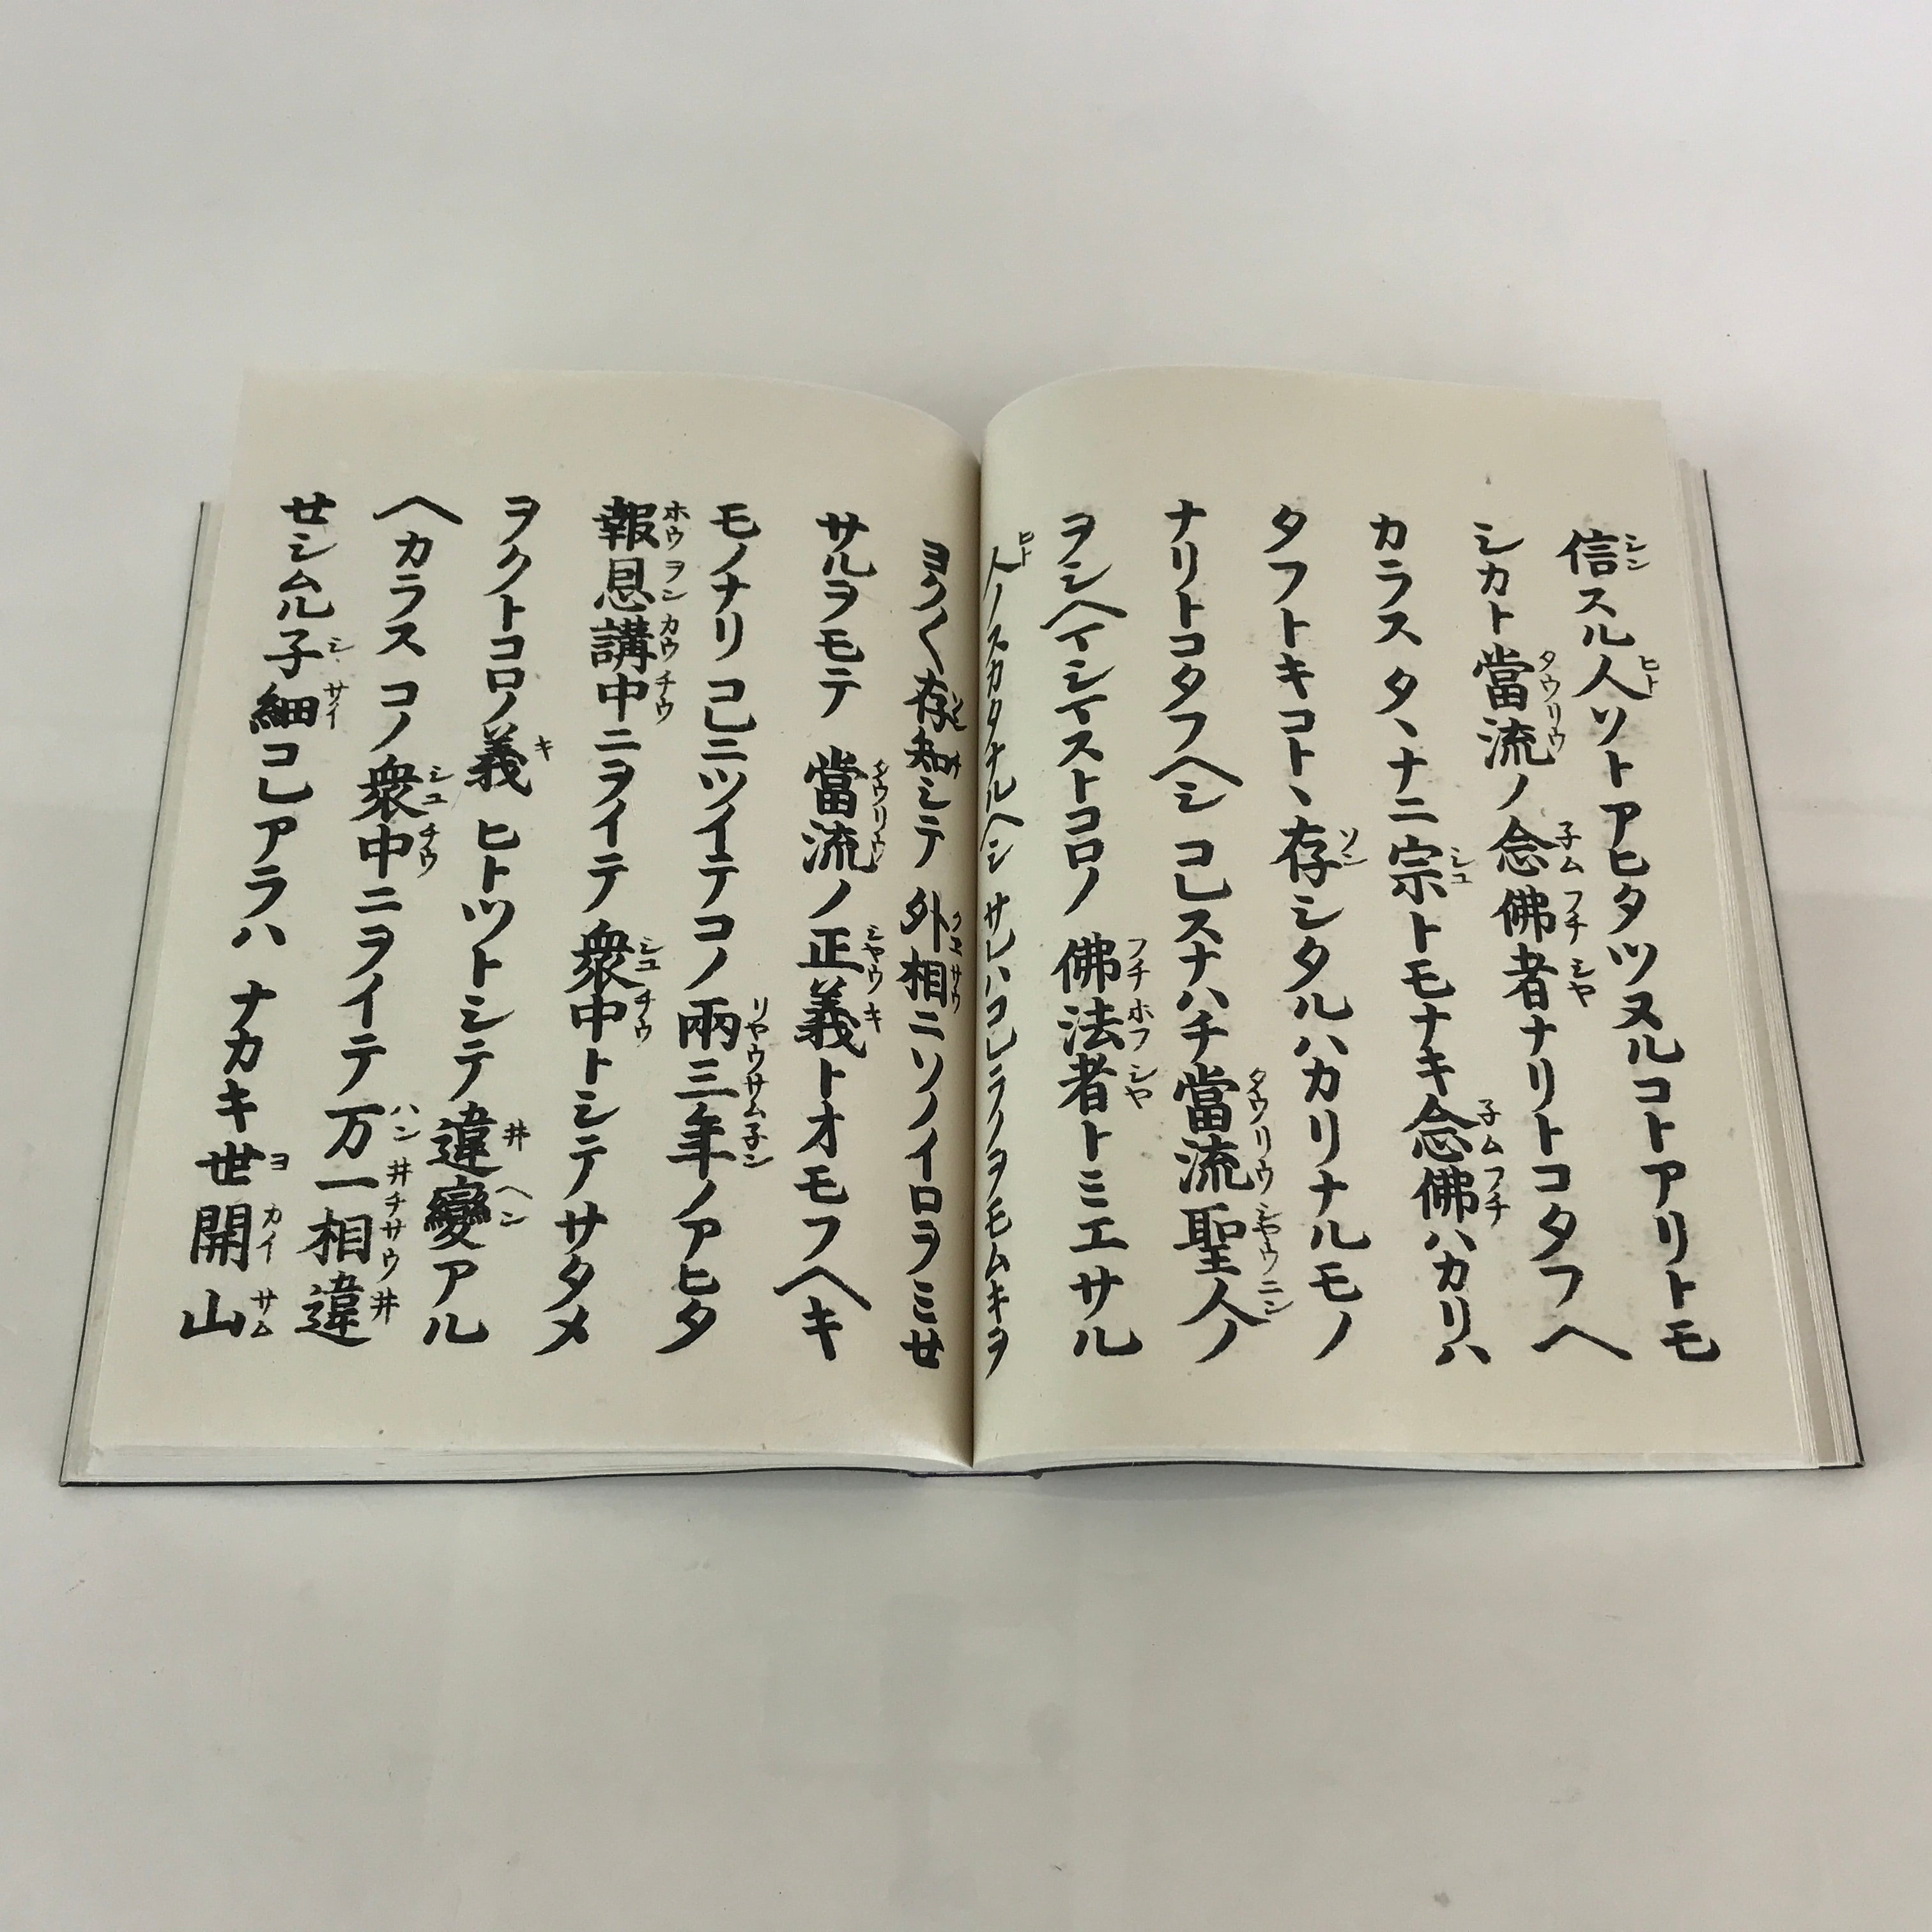 Japanese Buddhist Book Kocho Otani Vtg Higashi-Honganji Sennyo BU747